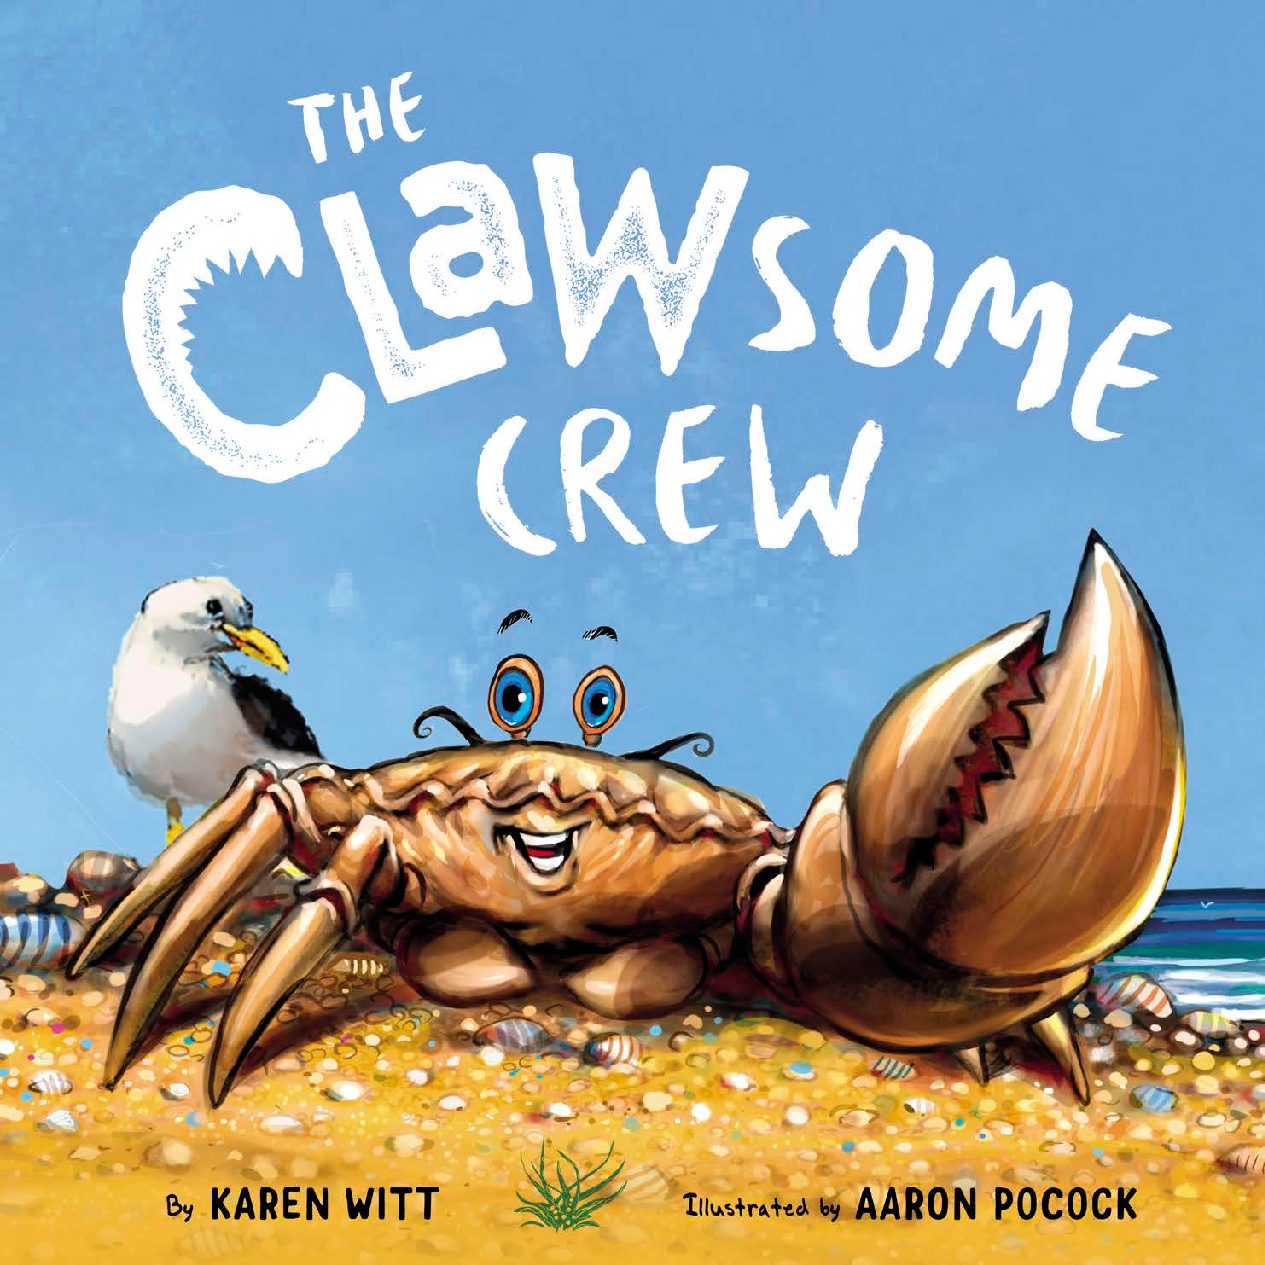 The Clawsome Crew